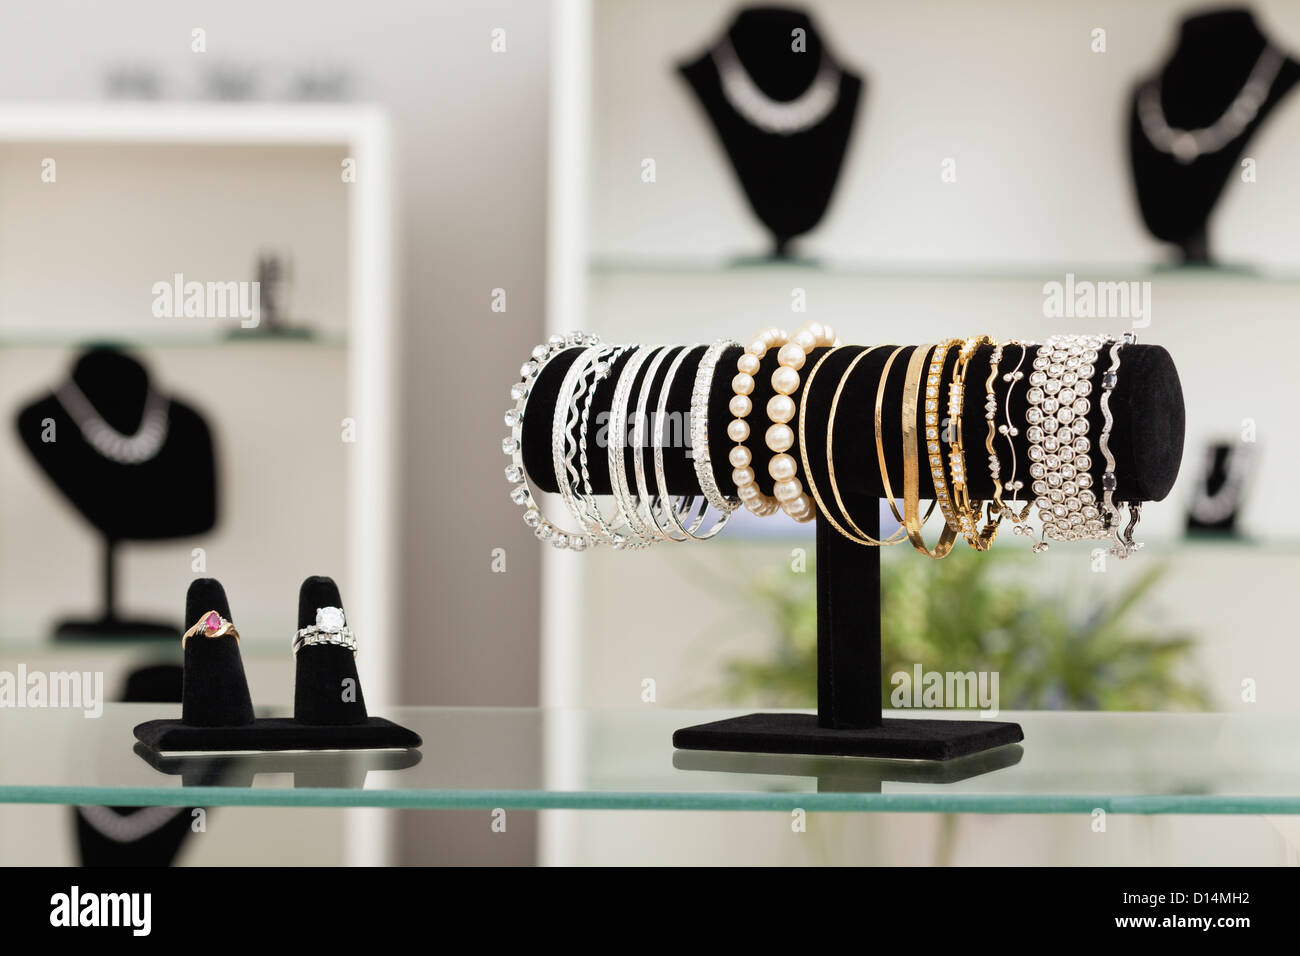 Stati Uniti d'America, Illinois, Metamora, bracciali e anelli sul display nel negozio Gioielli Foto Stock